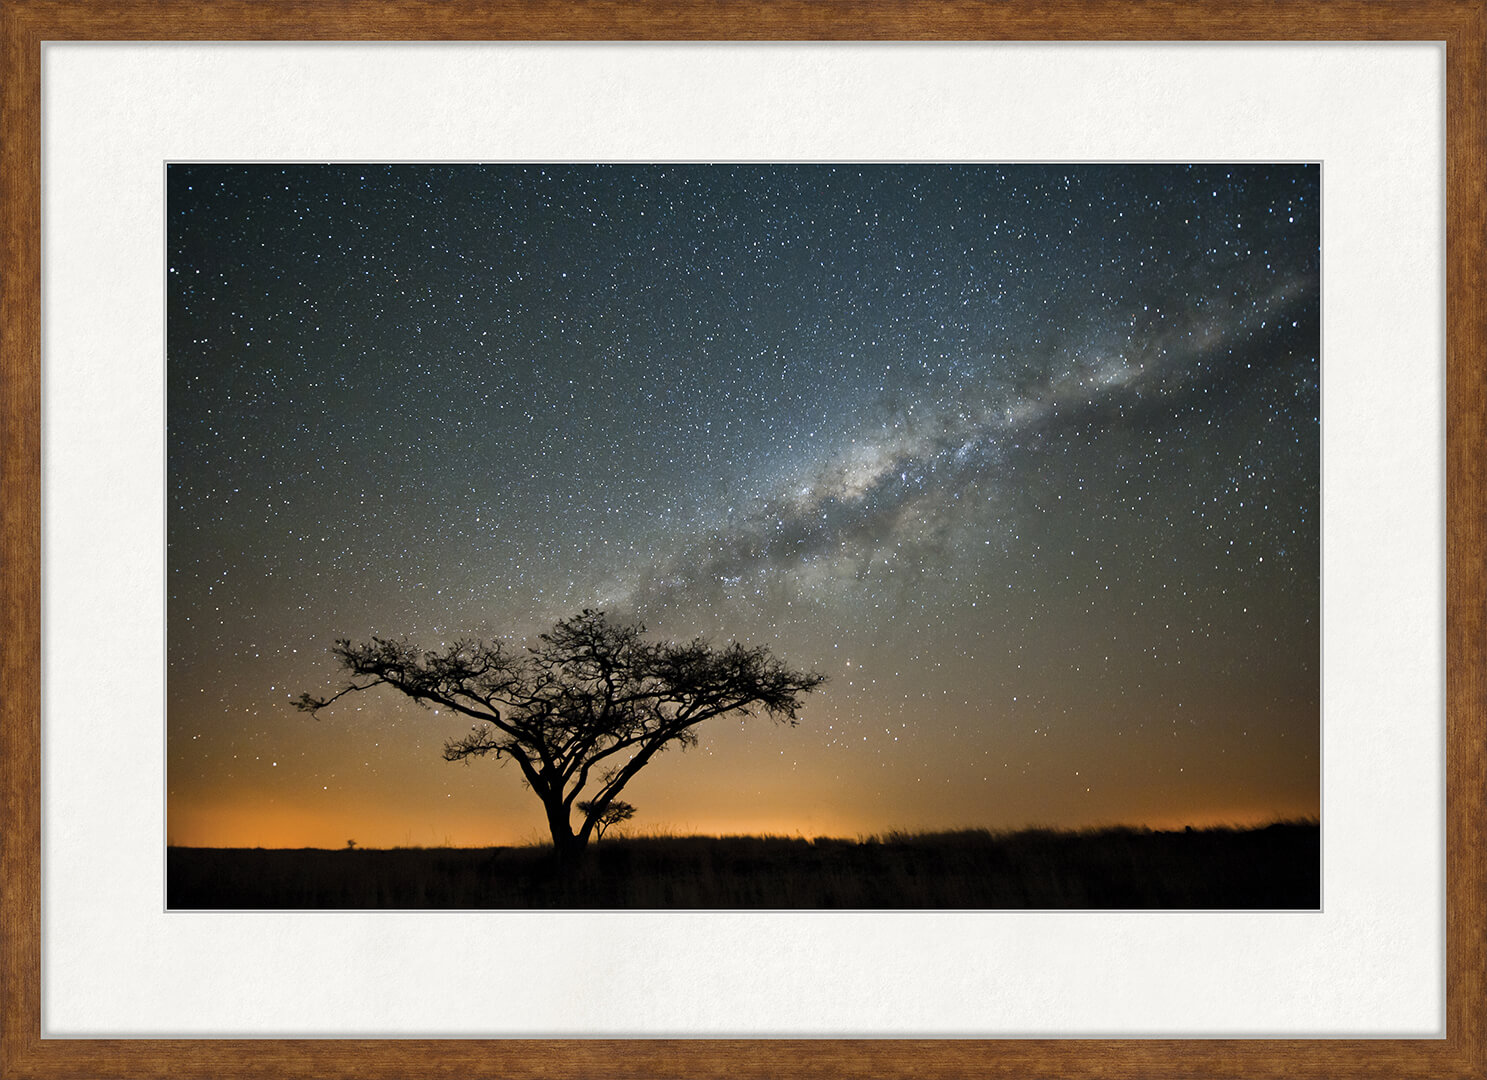 фото Картина Postermarket "Млечний путь в Южной Африке", 50 x 70 см Постермаркет / postermarket